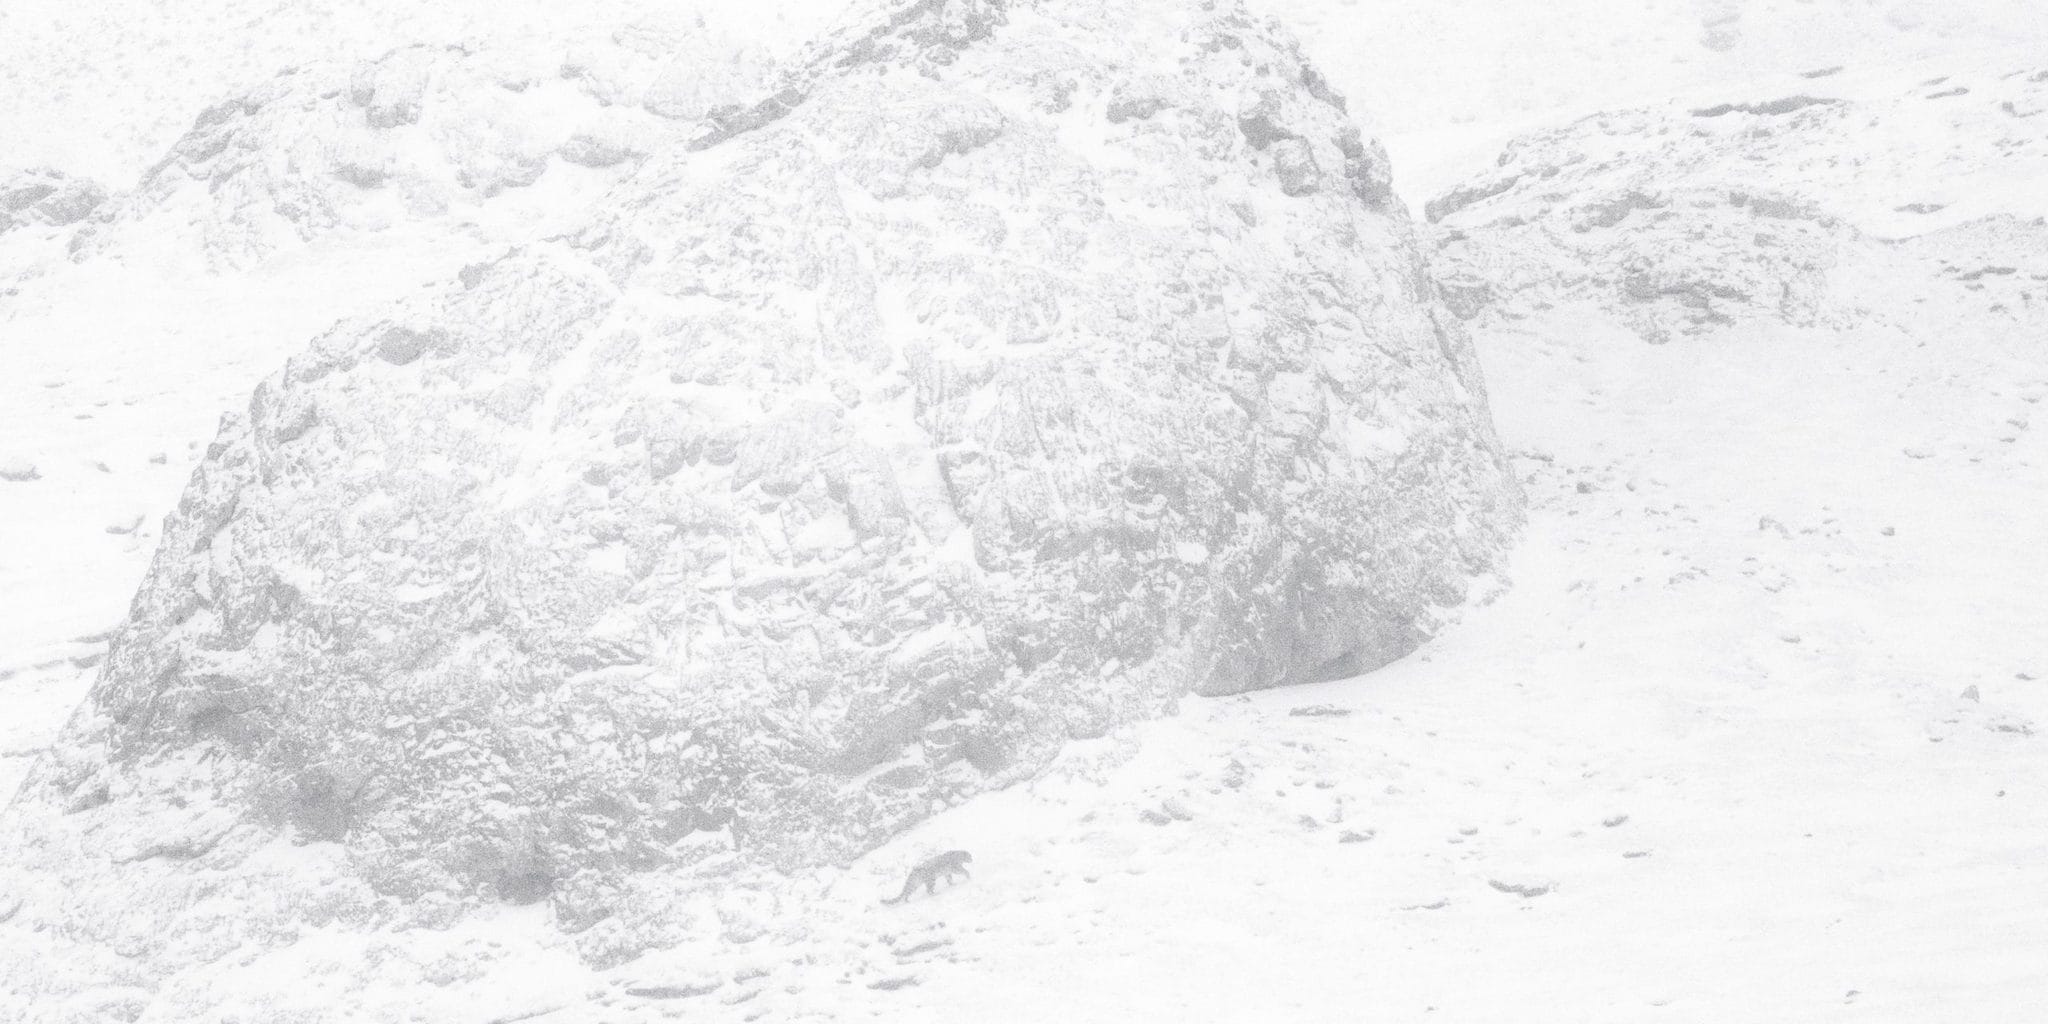 La Panthère des neiges de Marie Amiguet et Vincent Munier image documentaire